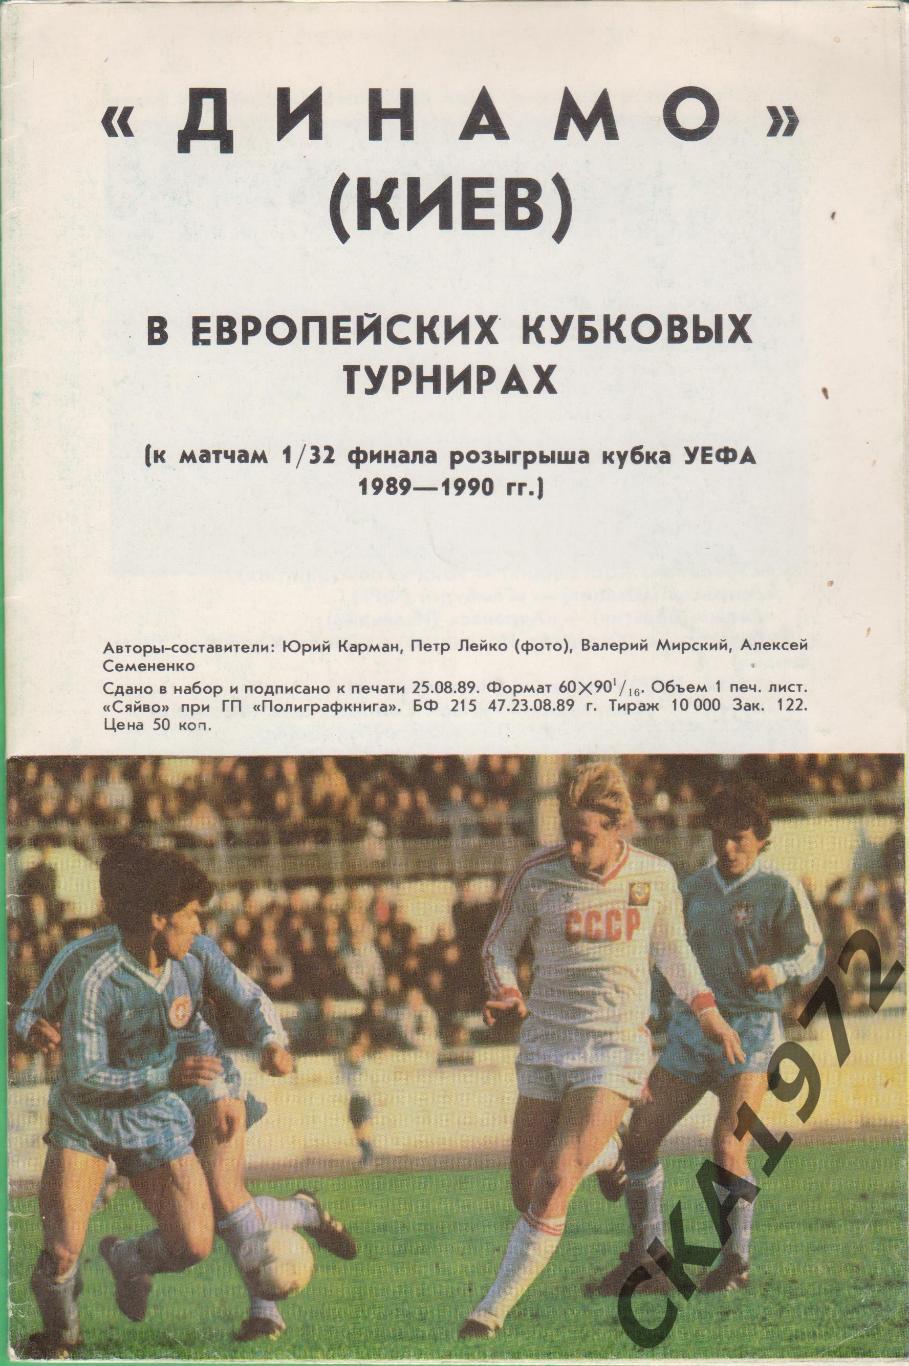 программа Динамо Киев в европейских кубковых турнирах 1989/90 +++